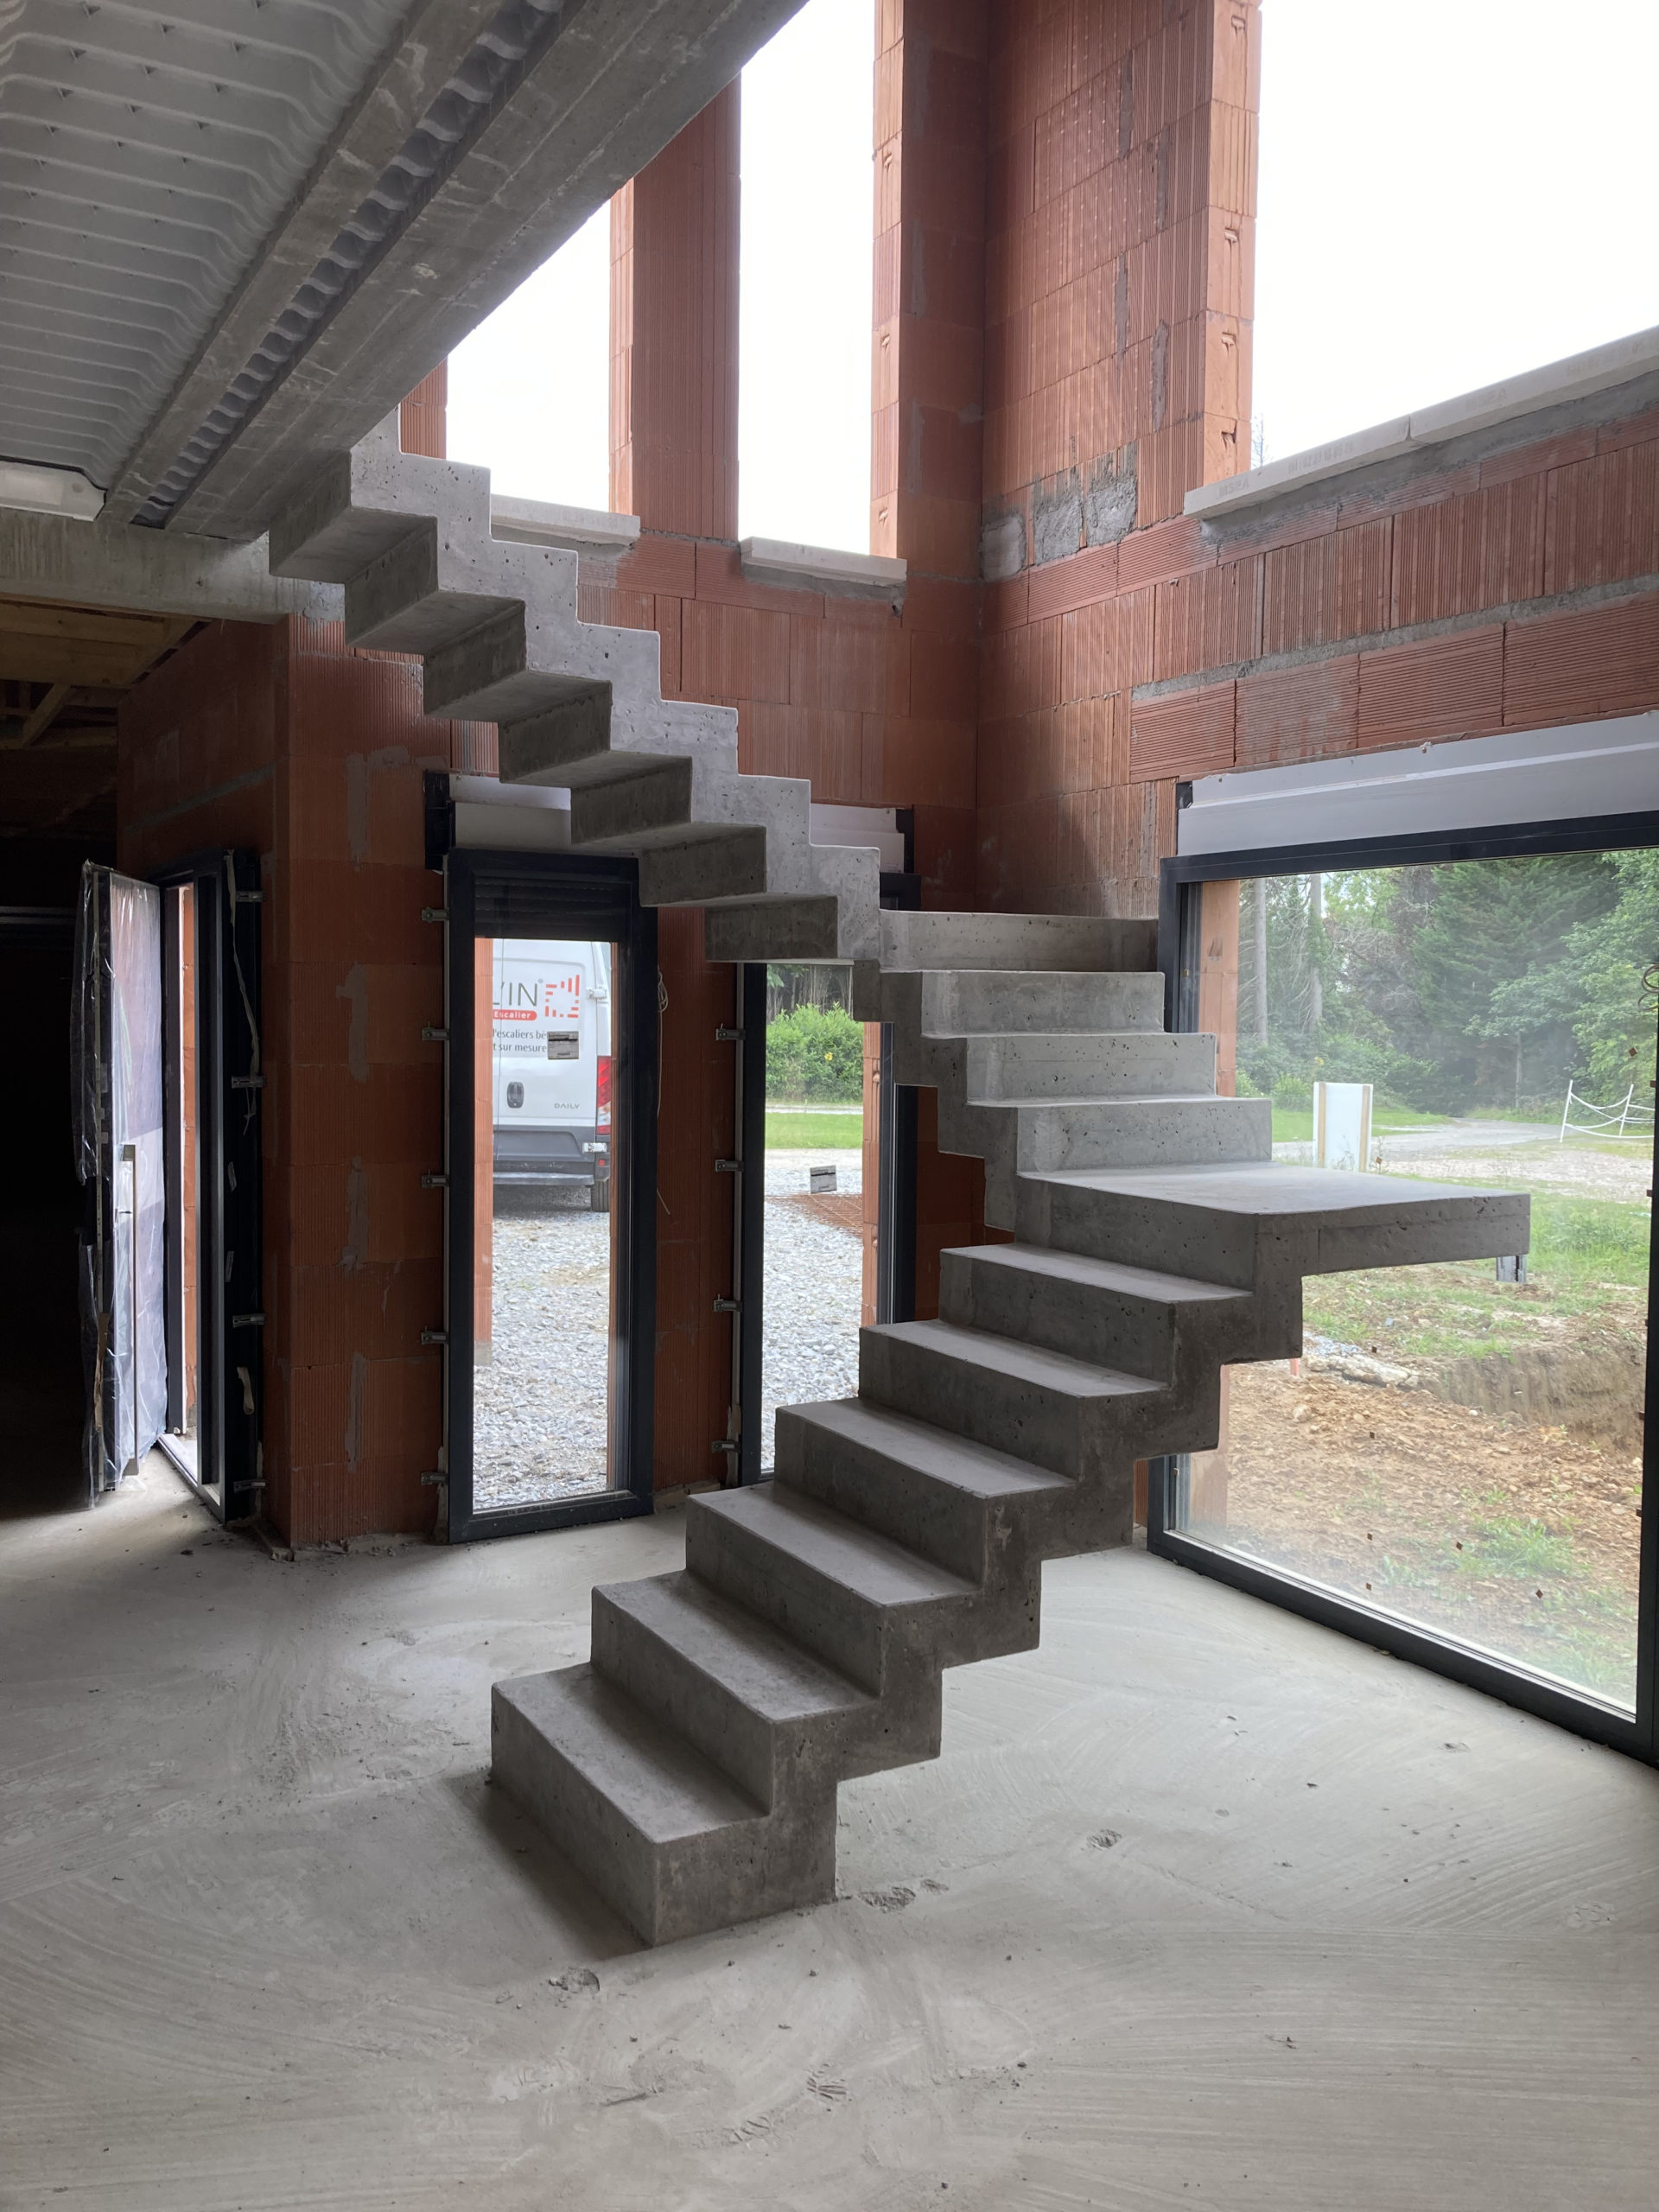 escalier béton à crémaillère devant une baie vitrée à châssis fixe.